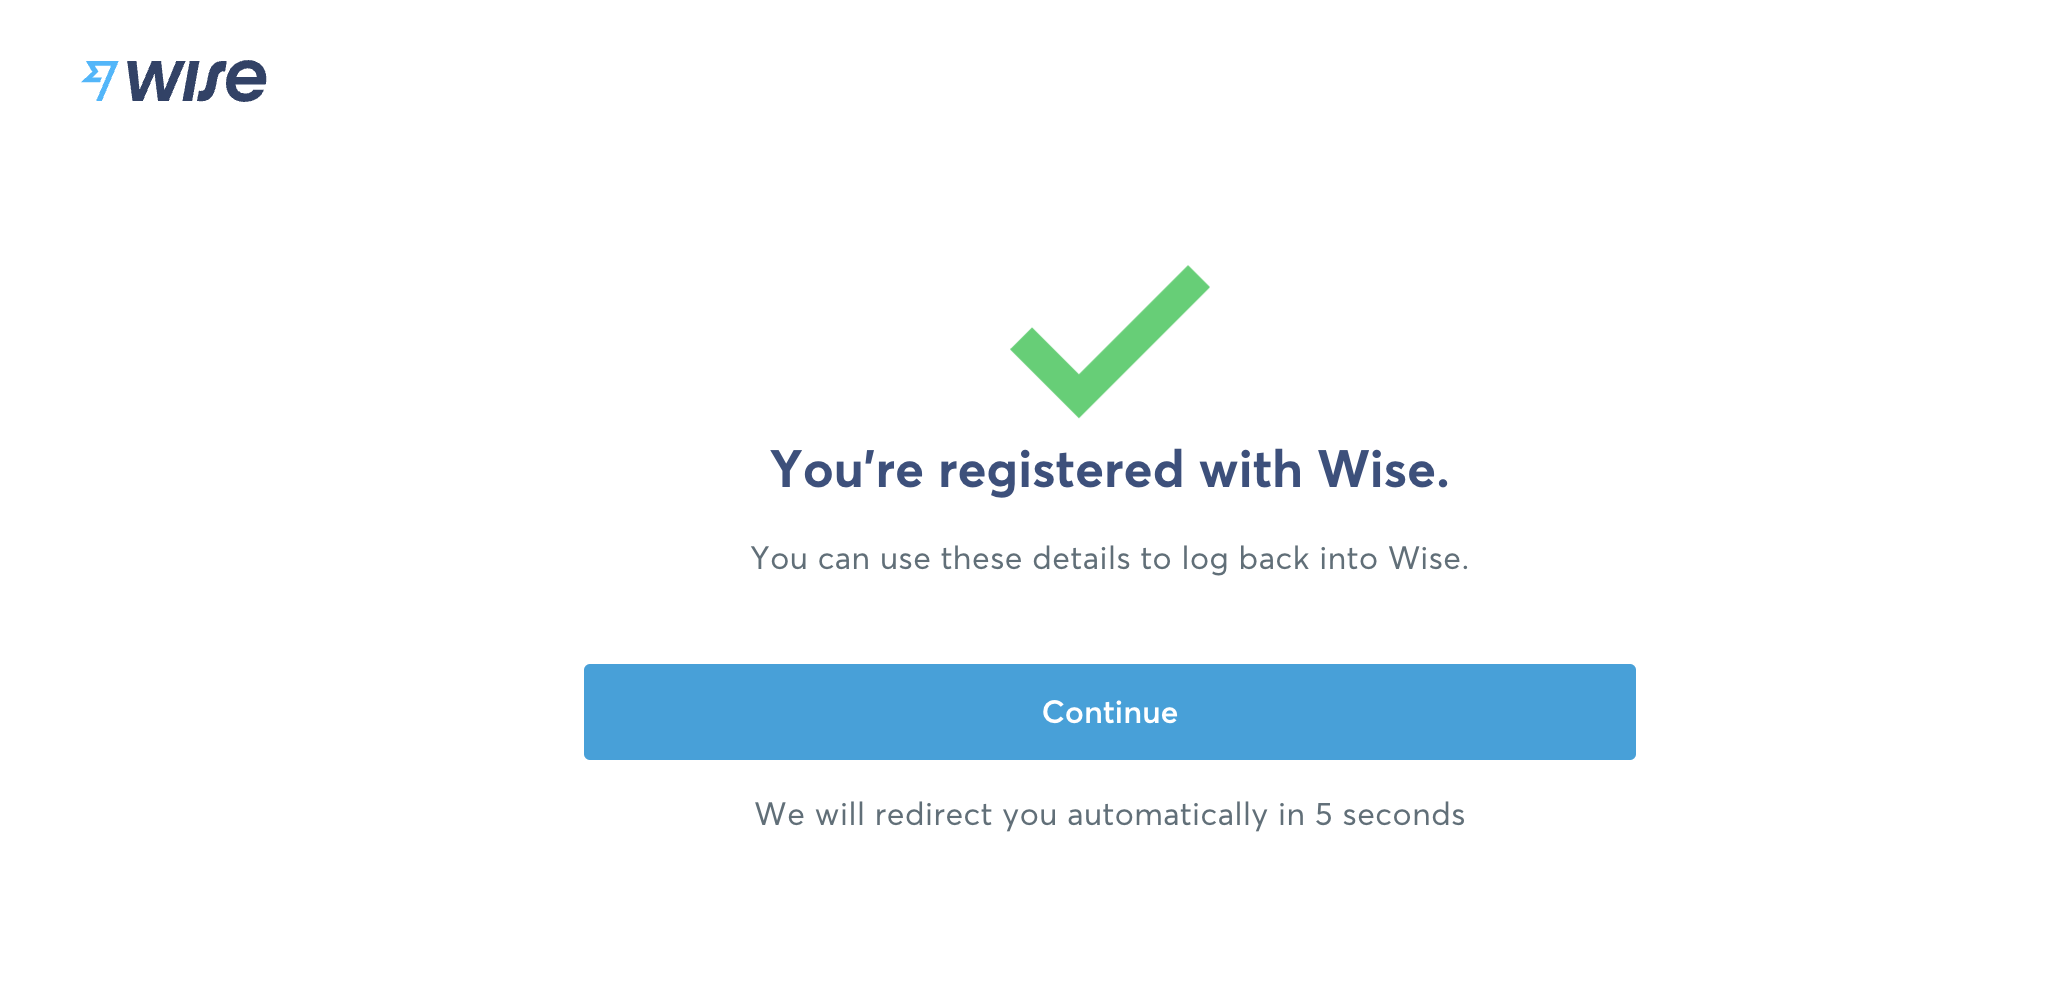 Wise 账号注册 - 完成 Wise 注册